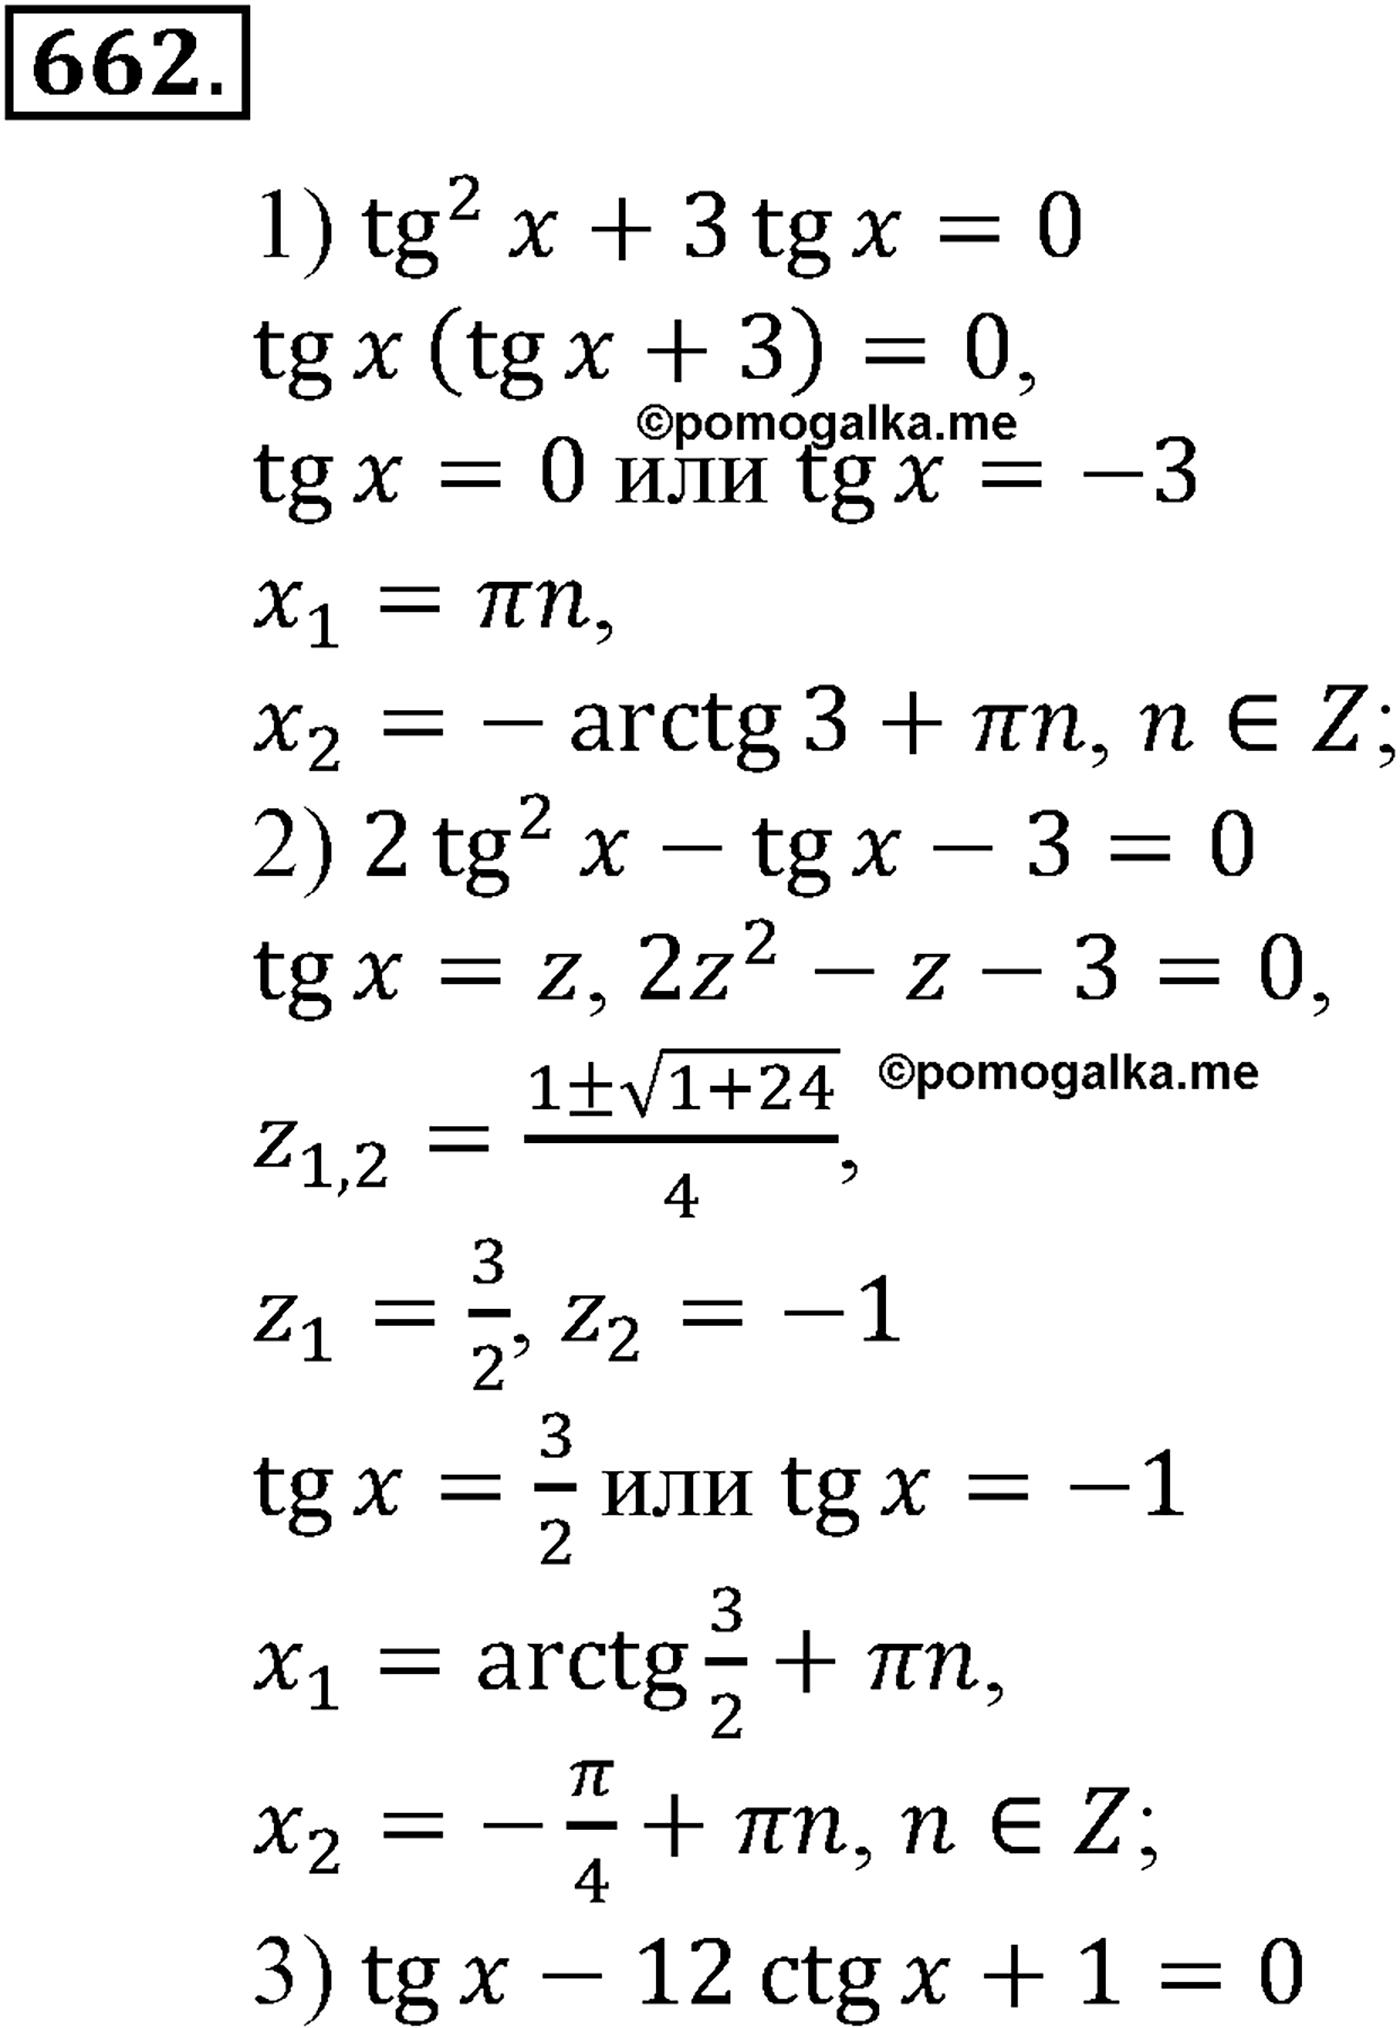 разбор задачи №662 по алгебре за 10-11 класс из учебника Алимова, Колягина